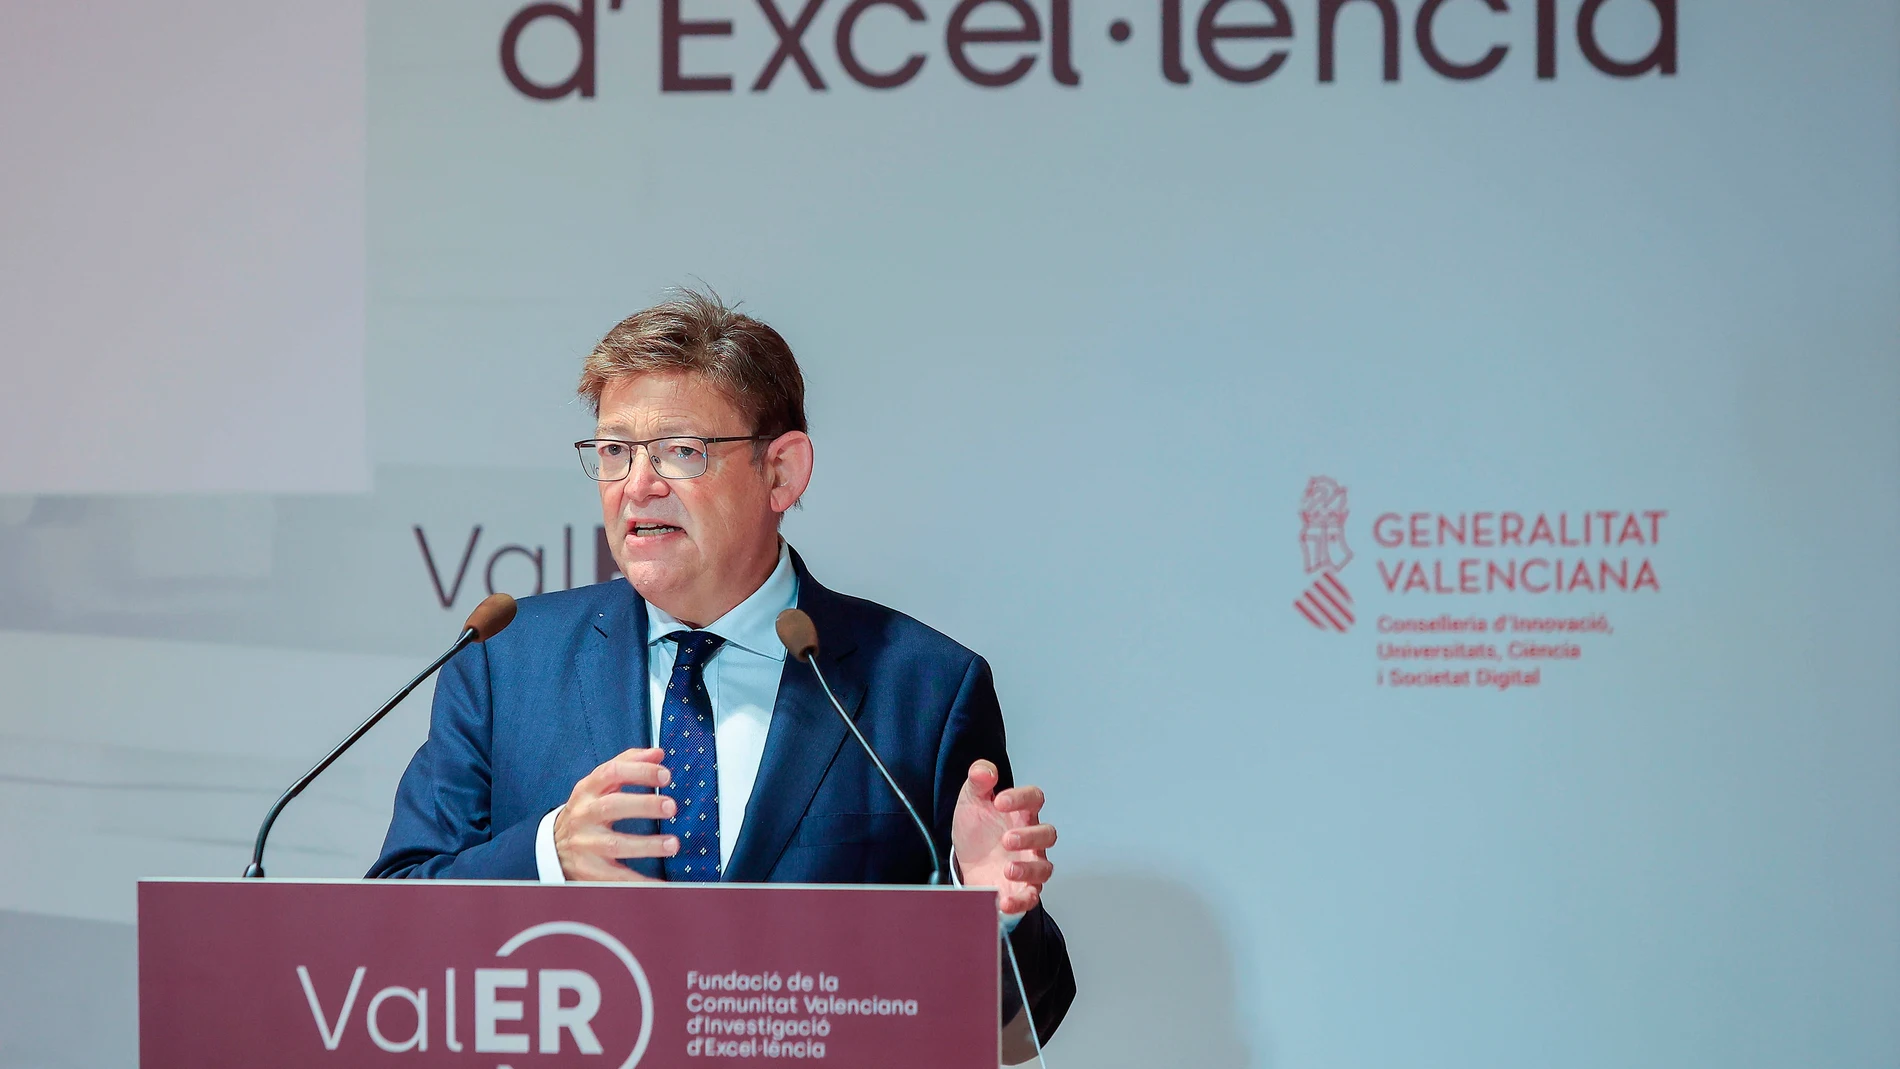 El Presidente de la Generalitat Valenciana, Ximo Puig, durante la presentación de VALER, Fundació de la Comunitat Valenciana d'Investigació d'Excel·lencia. EFE/Doménech Castelló